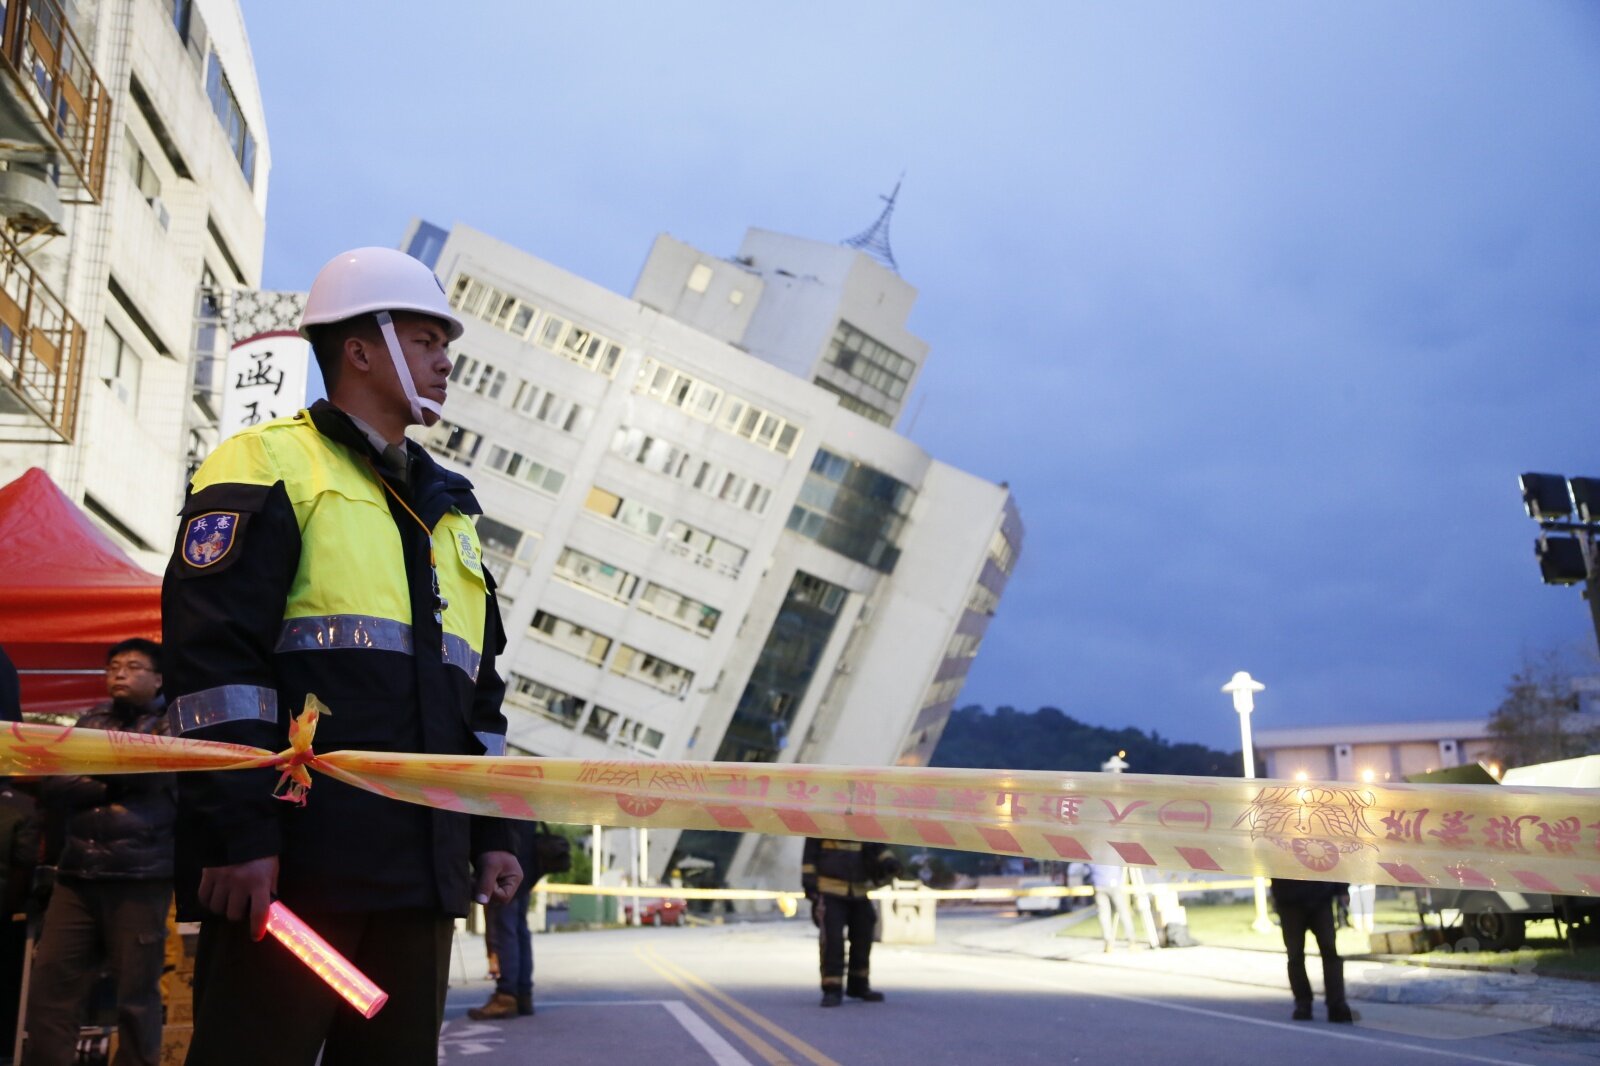 Zdjęcie ukazuje trzęsienie ziemi na Tajwanie. Po lewej stronie zdjęcia pracownik służb ratowniczych stoi za taśmą ostrzegawczą. W tle pochylony w prawo duży, kilkupiętrowy budynek.     